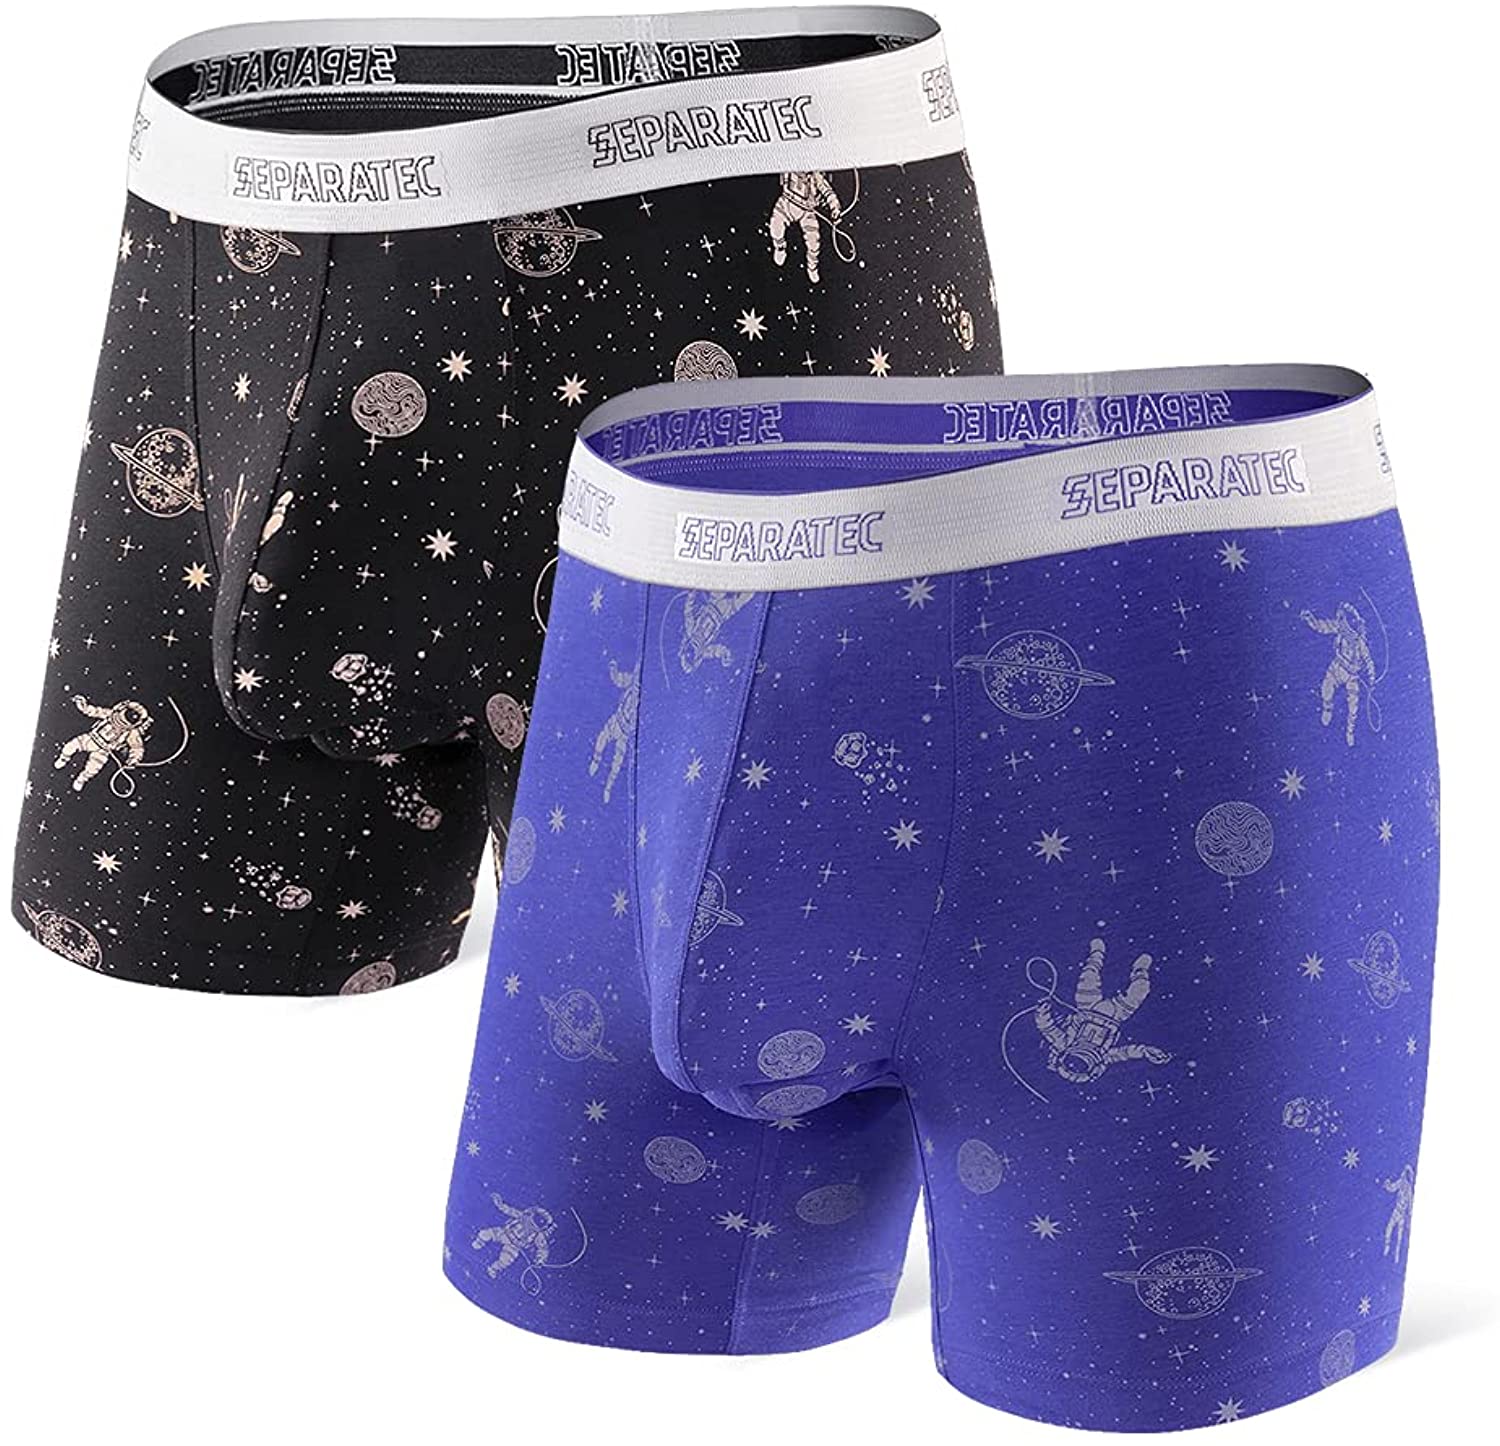 Separatec Men's Dual Pouch Underwear Comfort Flex Fit Premium Cotton Modal  Blend